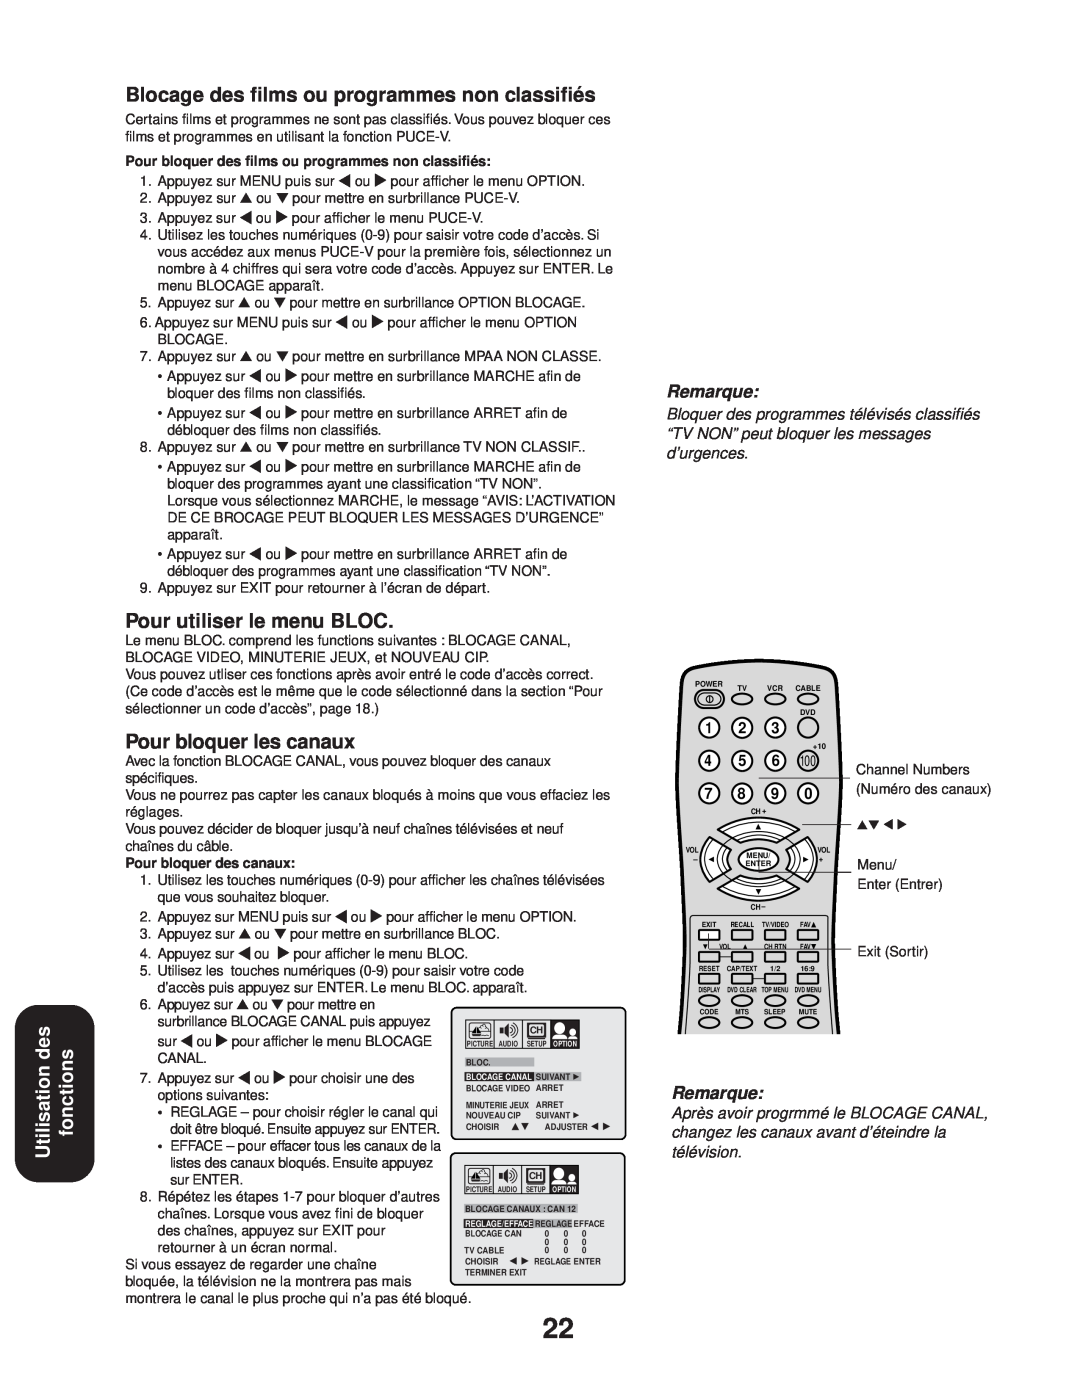 Toshiba 24AF43 Utilisation des fonctions, Blocage des films ou programmes non classifiés, Pour utiliser le menu BLOC 